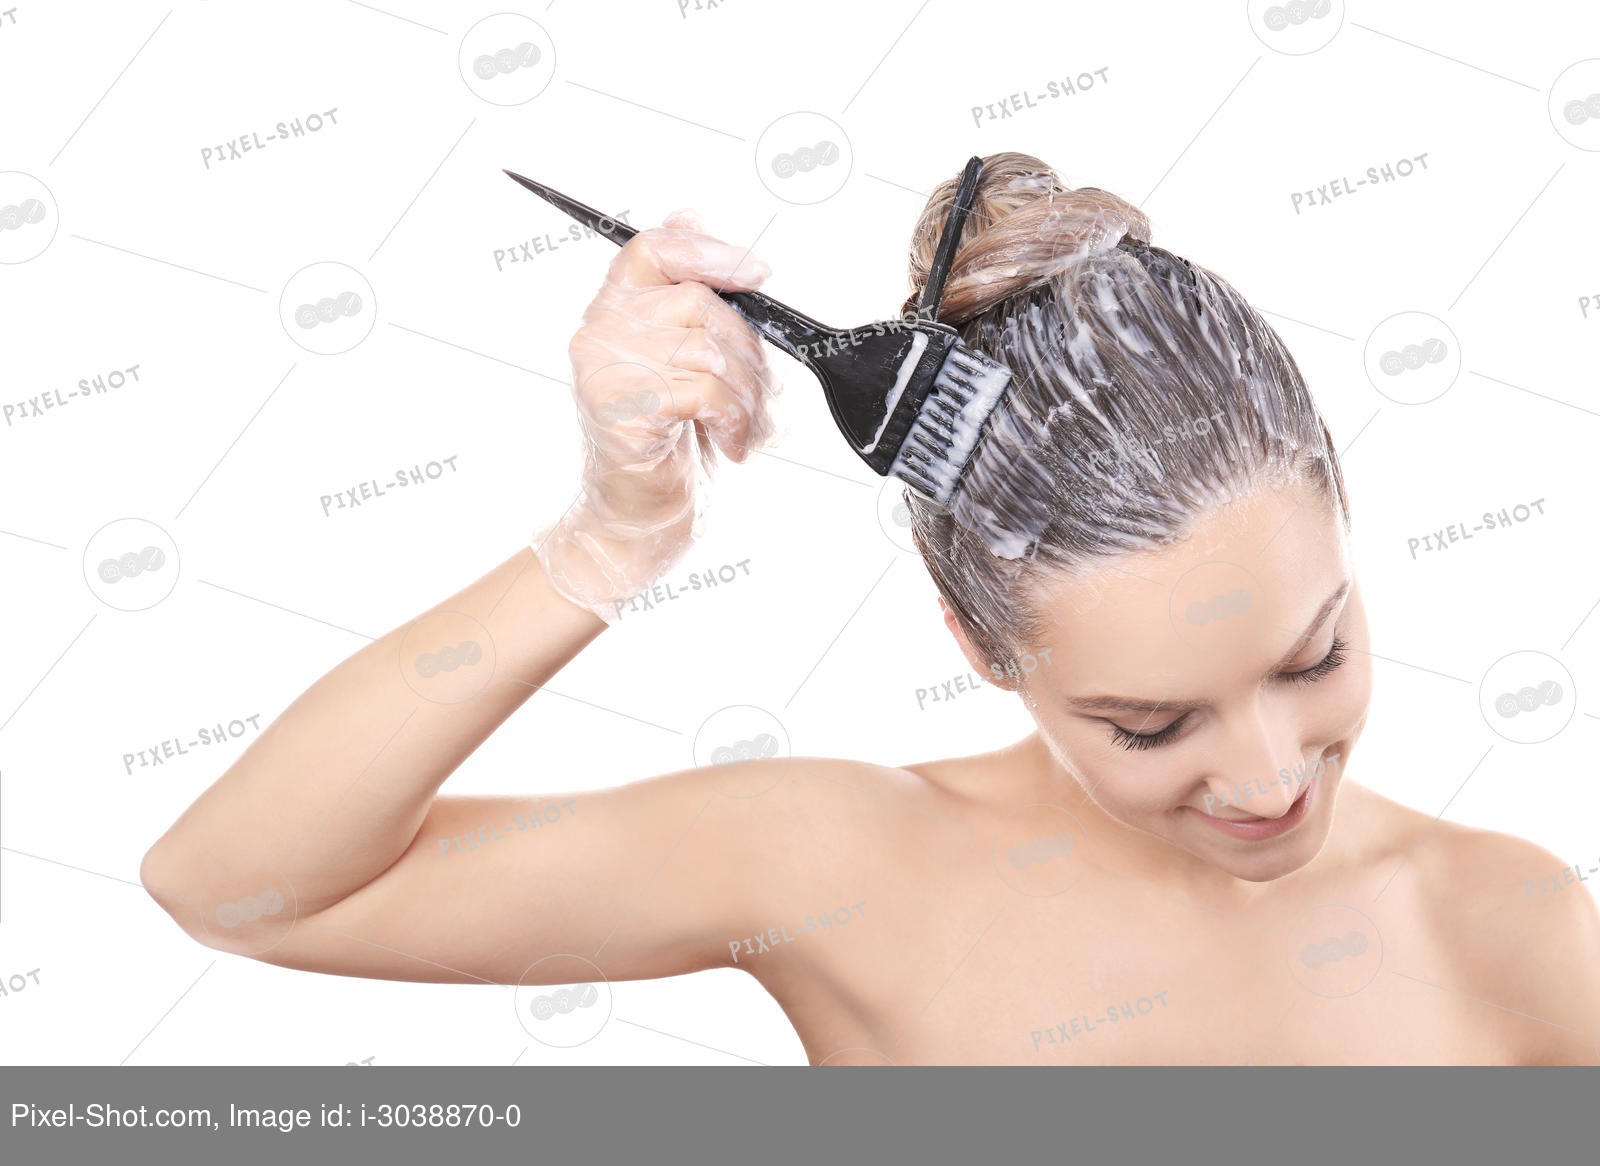 Как правильно наносить краску на волосы на грязные или чистые волосы